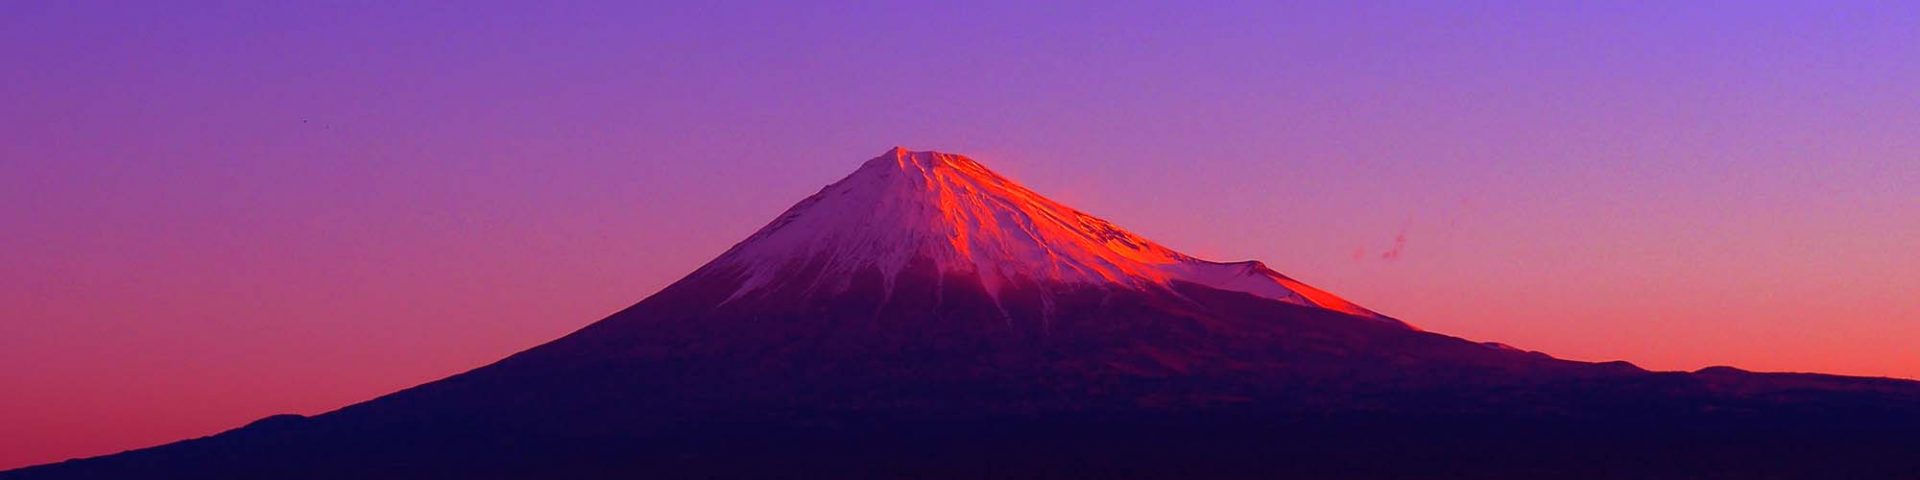 富士山 富士川河川敷からの眺め 日本の絶景 撮影スポット Lucky View